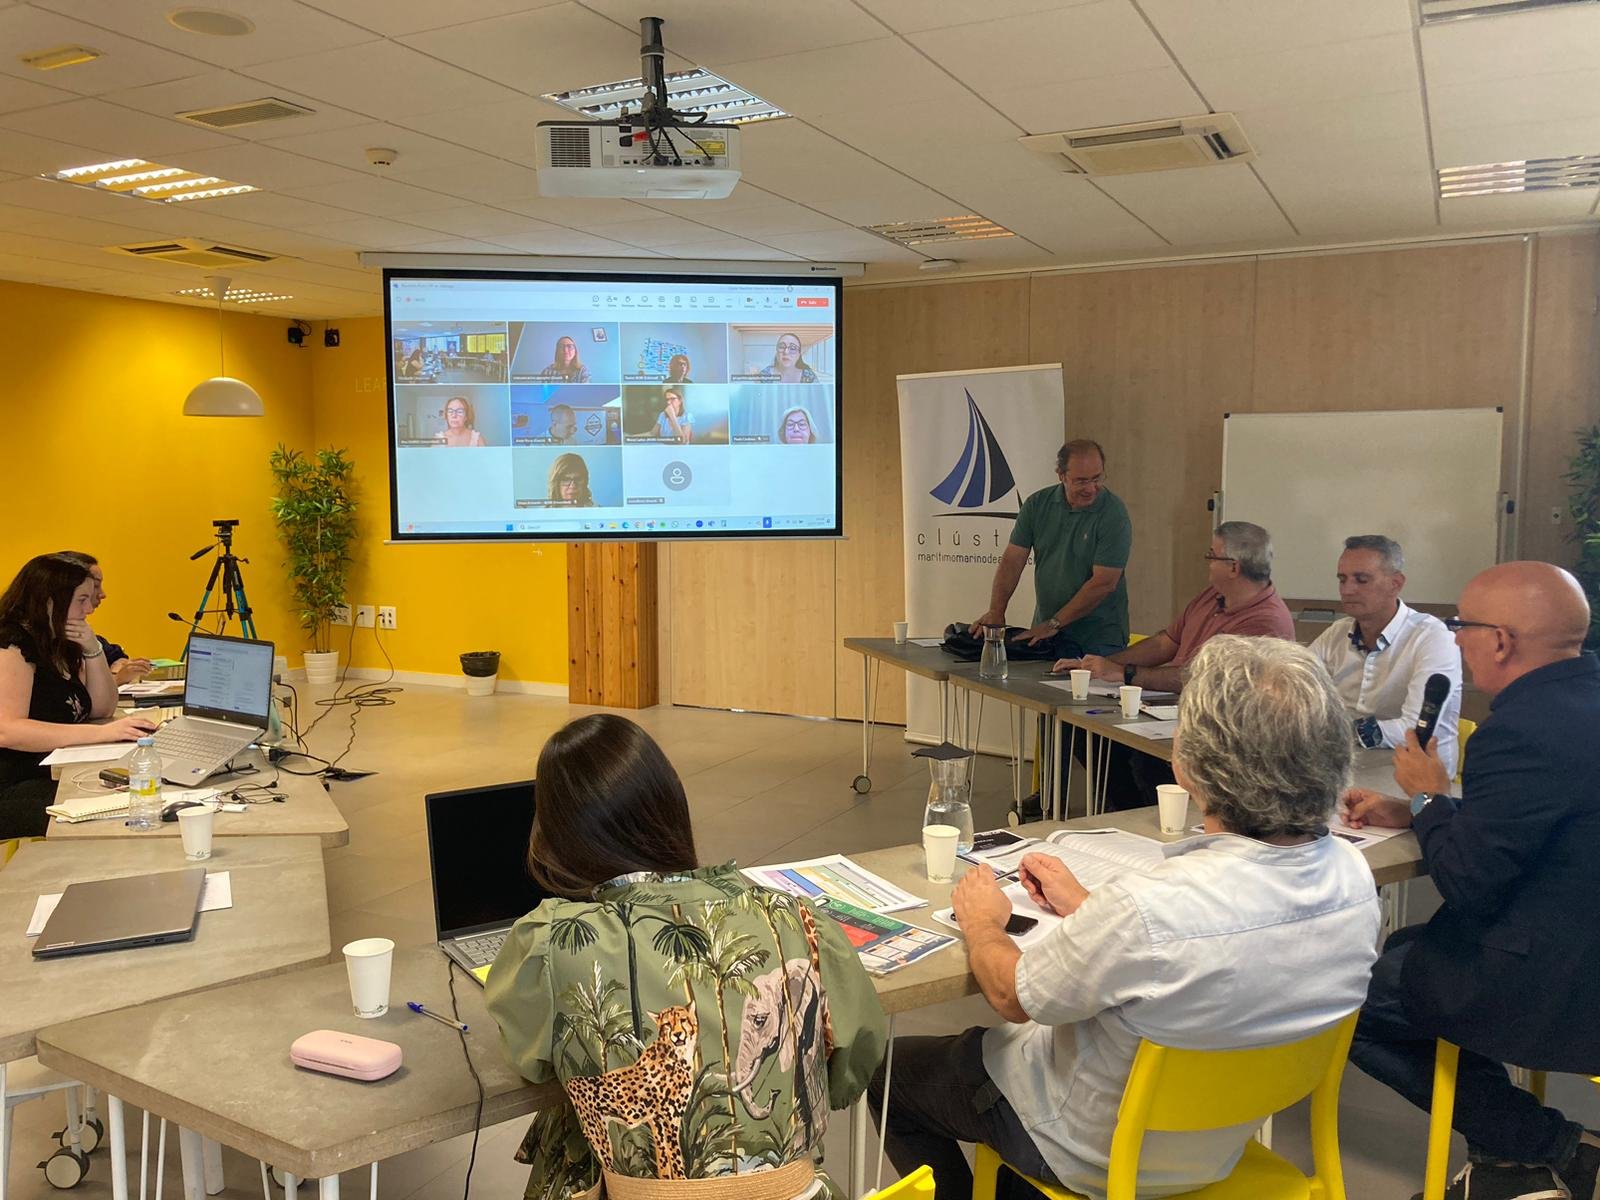 Imagem da reunião de lançamento do projeto, com alguns dos membros da parceria sentados diante uma tela que projeta os outros participantes numa reunião em videoconferência